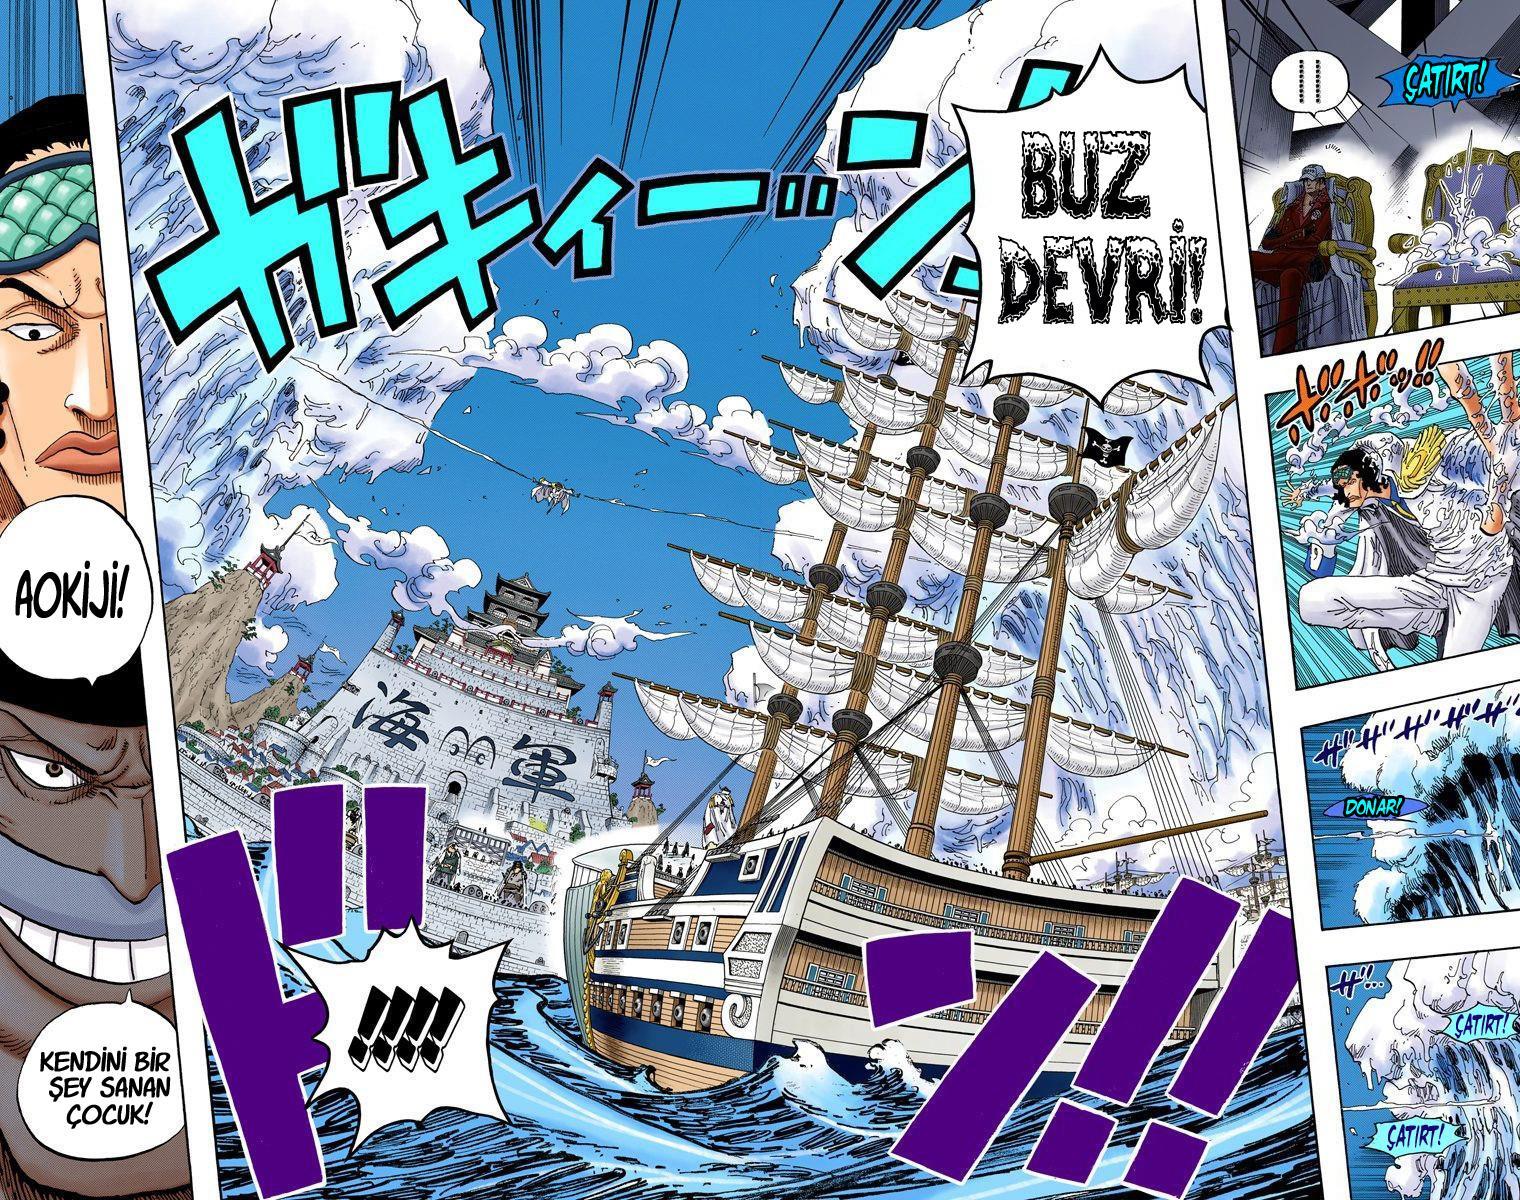 One Piece [Renkli] mangasının 0553 bölümünün 4. sayfasını okuyorsunuz.